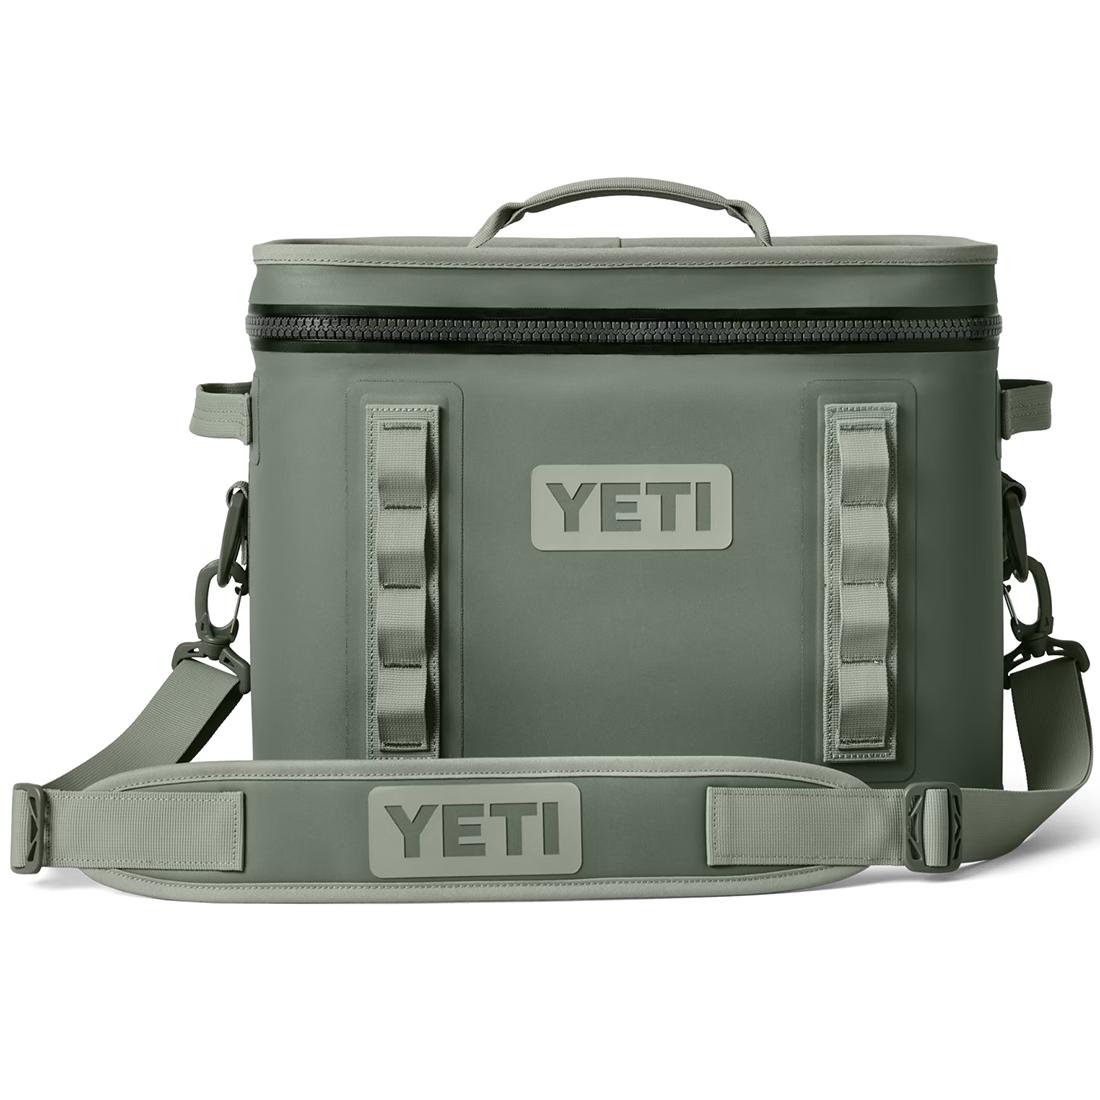 YETI- Daytrip Lunch Bag Camp Green